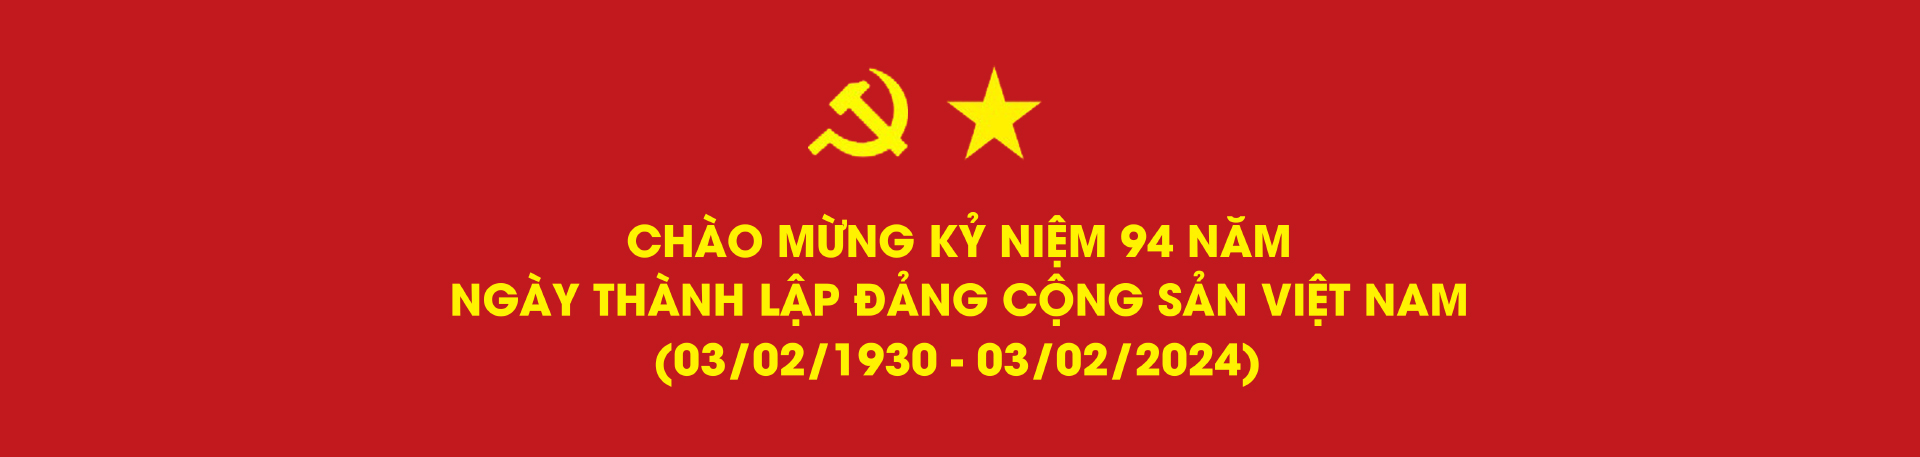 Chào mừng kỷ niệm 94 năm ngày thành lập đảng cộng sản Việt Nam